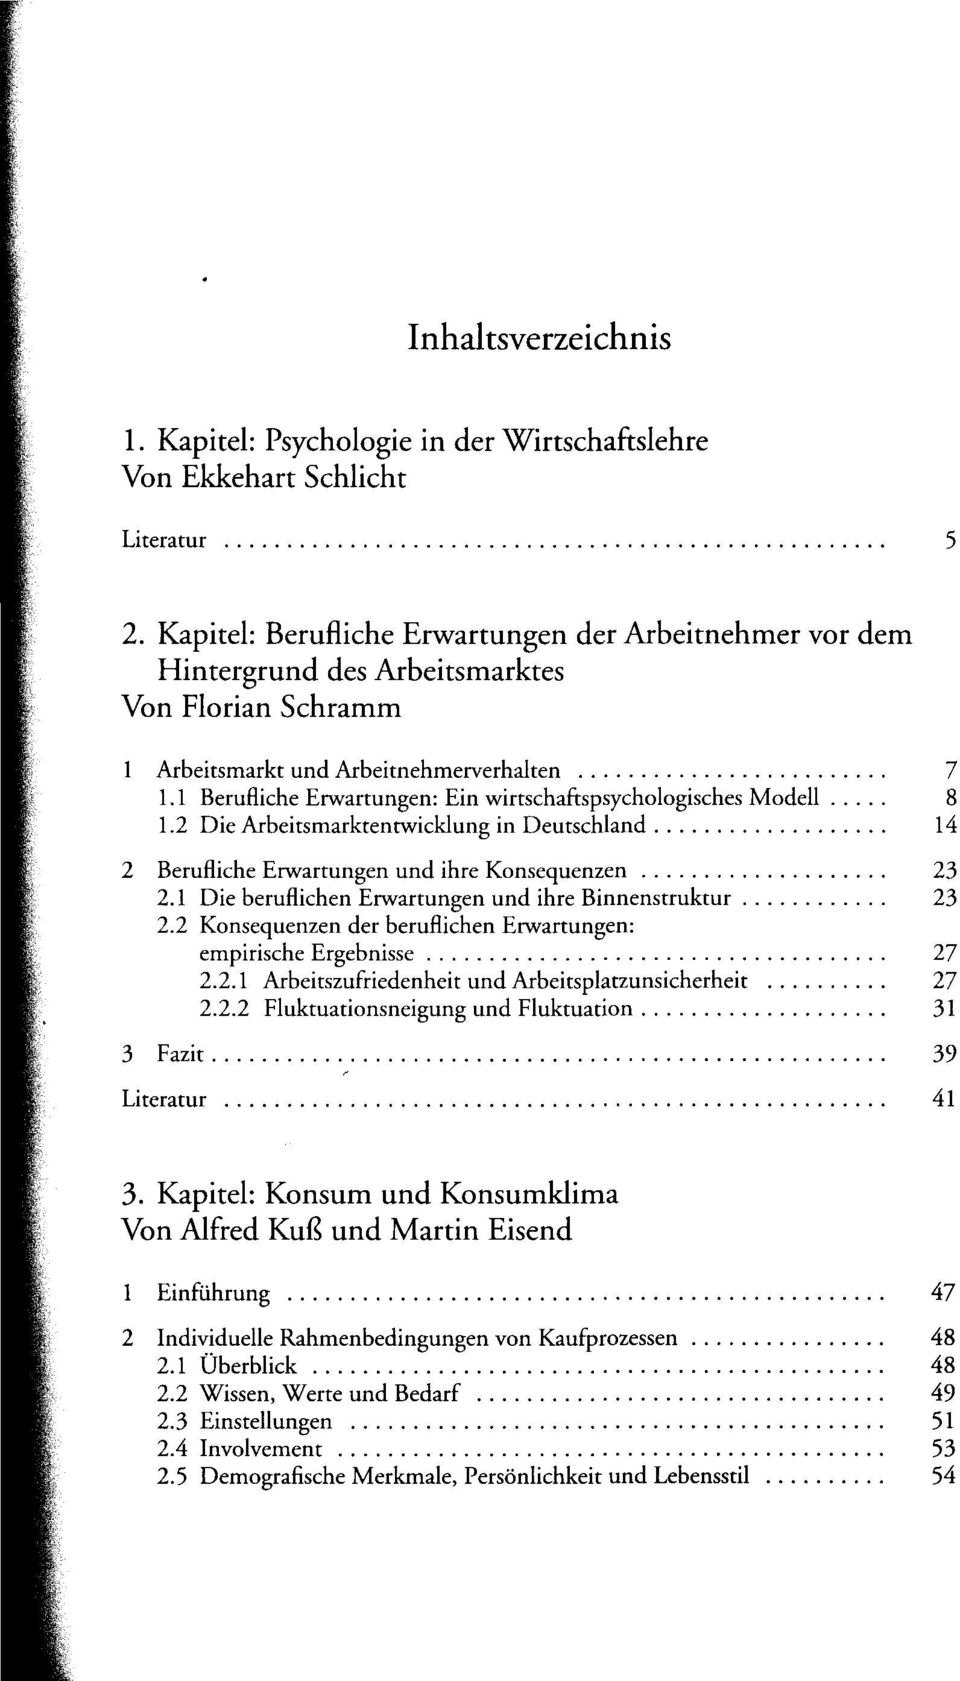 1 Berufliche Erwartungen: Ein wirtschaftspsychologisches Modell 8 1.2 Die Arbeitsmarktentwicklung in Deutschland 14 2 Berufliche Erwartungen und ihre Konsequenzen 23 2.